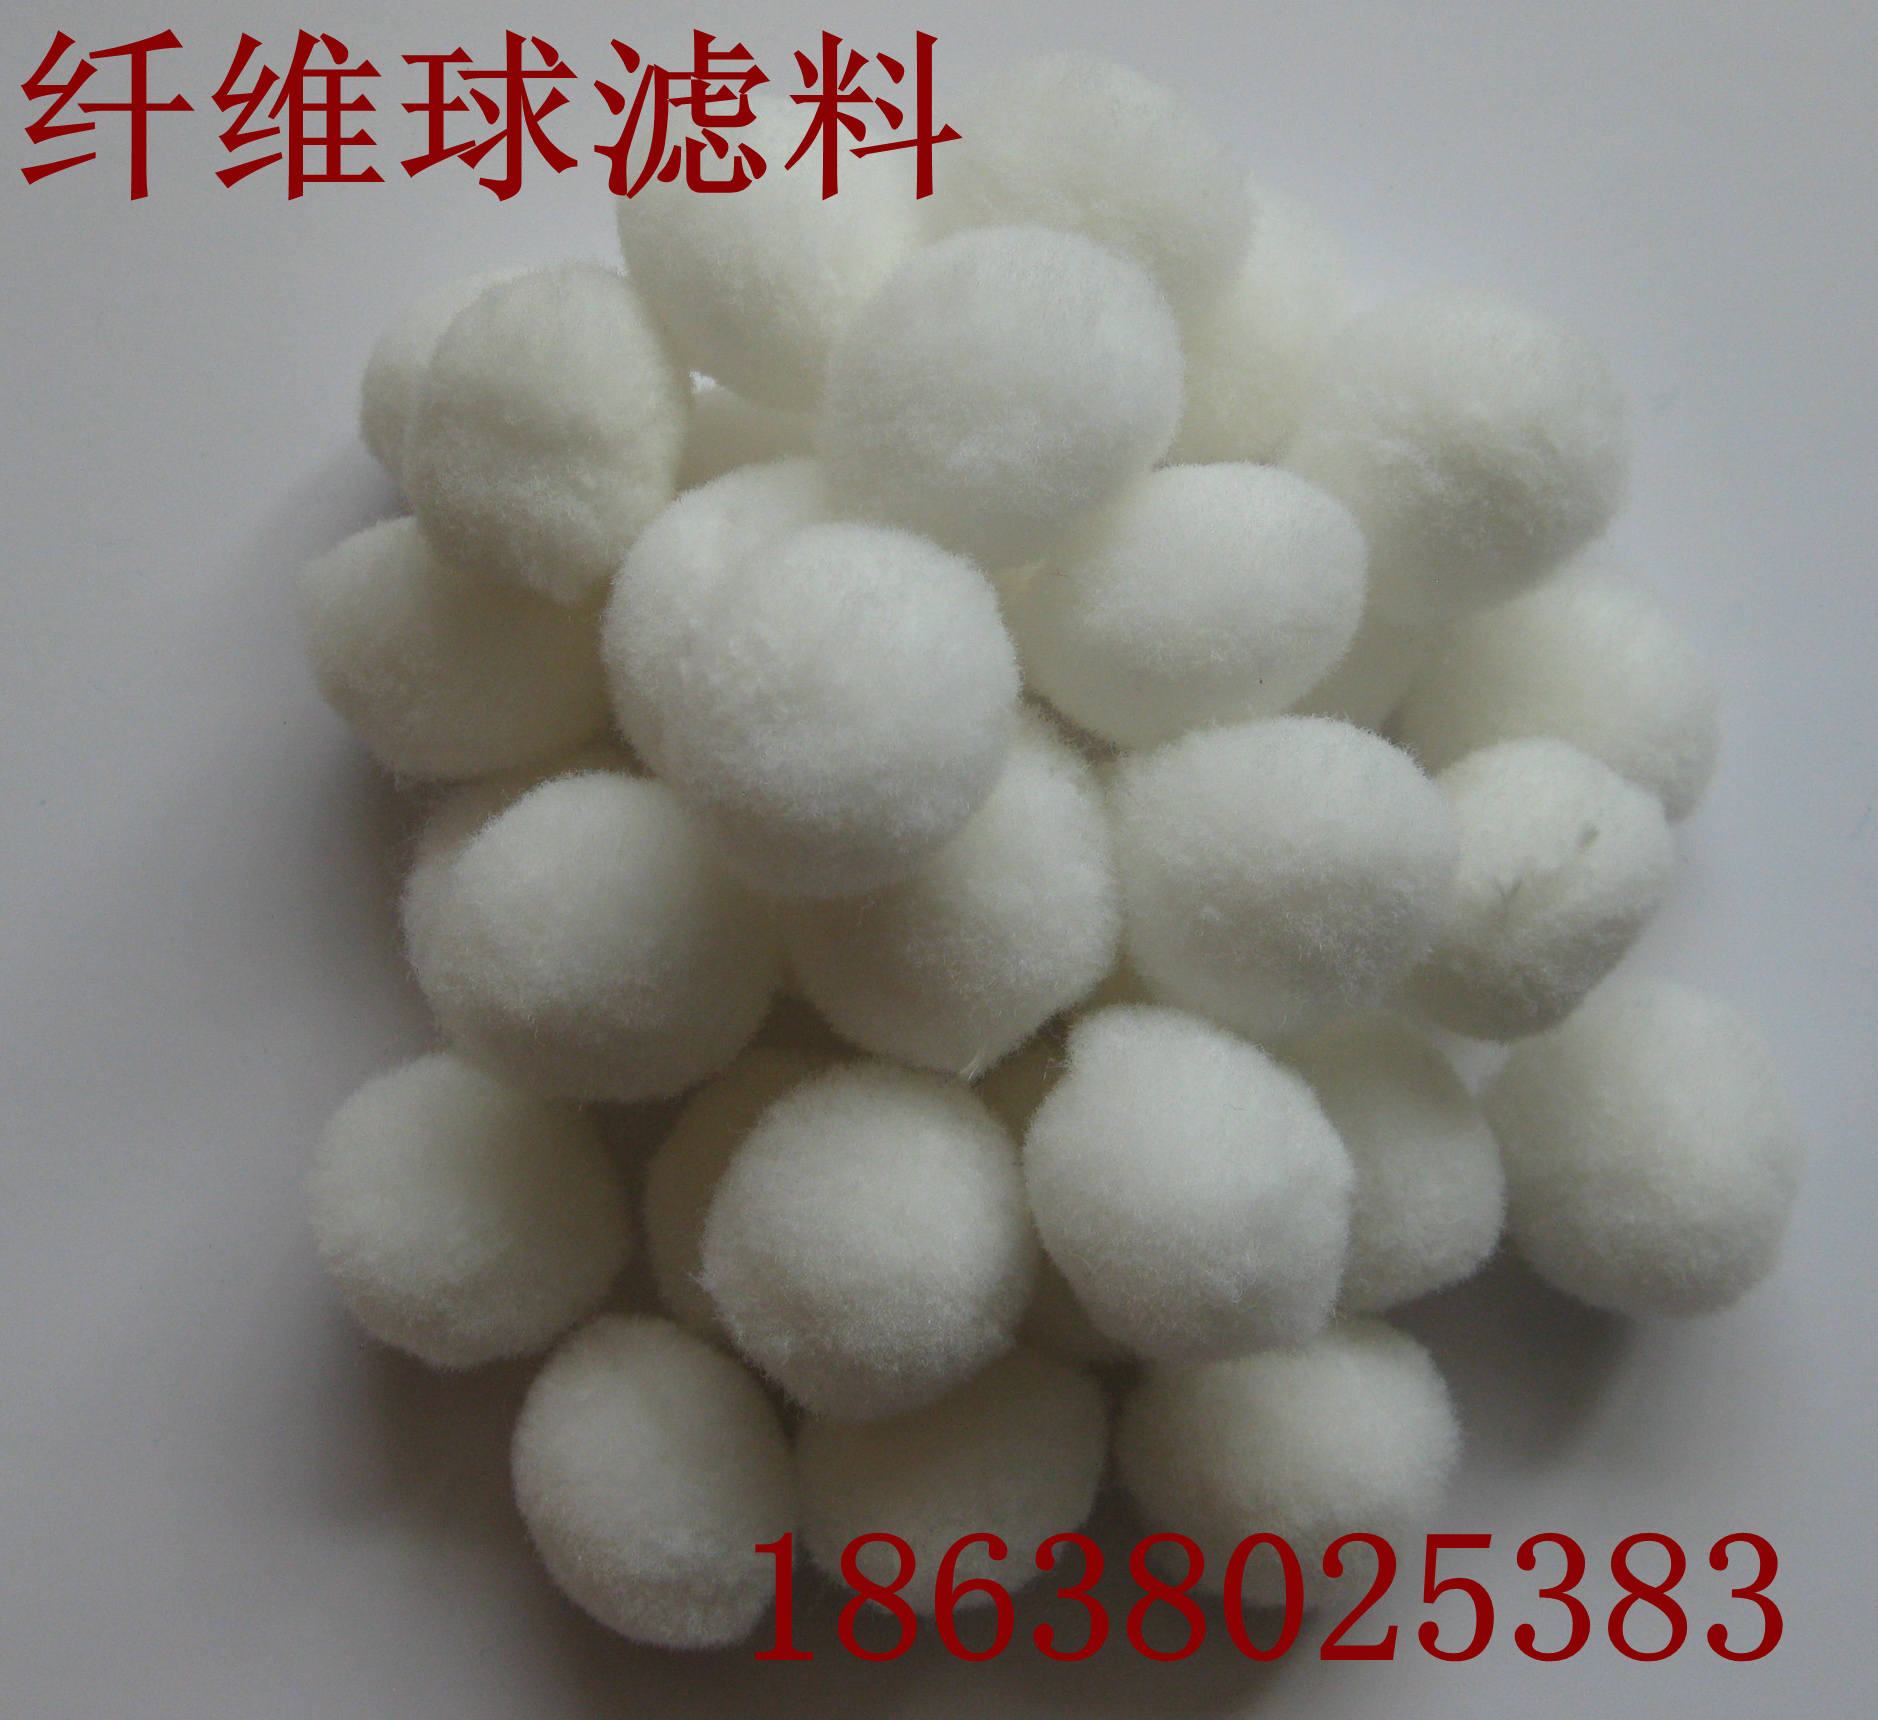 供应纤维球滤料厂家直销 纤维球滤料价格 纤维球滤料 环保纤维球滤料图片